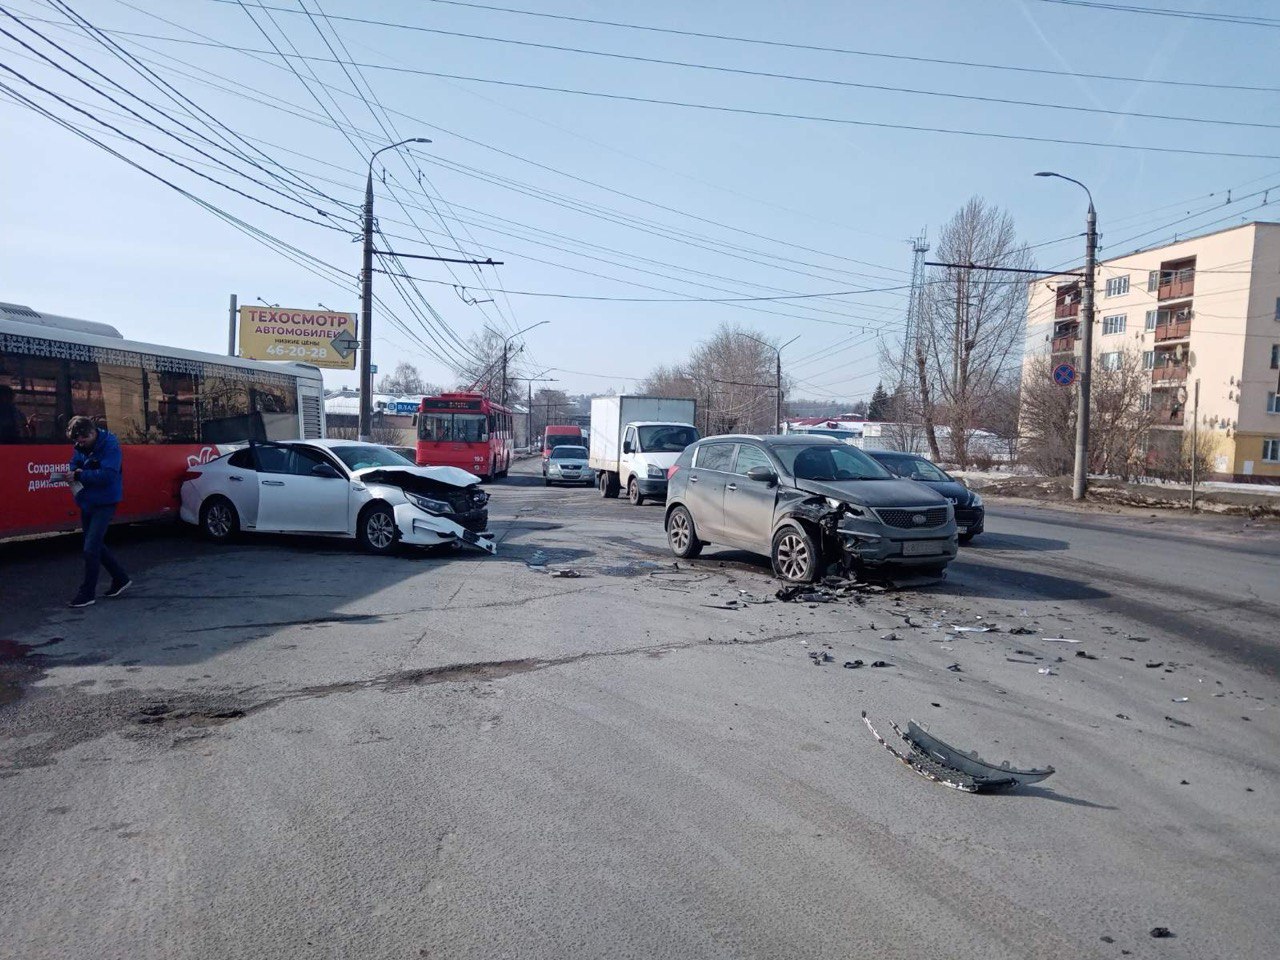 В ДТП в Добром попали две иномарки "Kia" и городской автобус